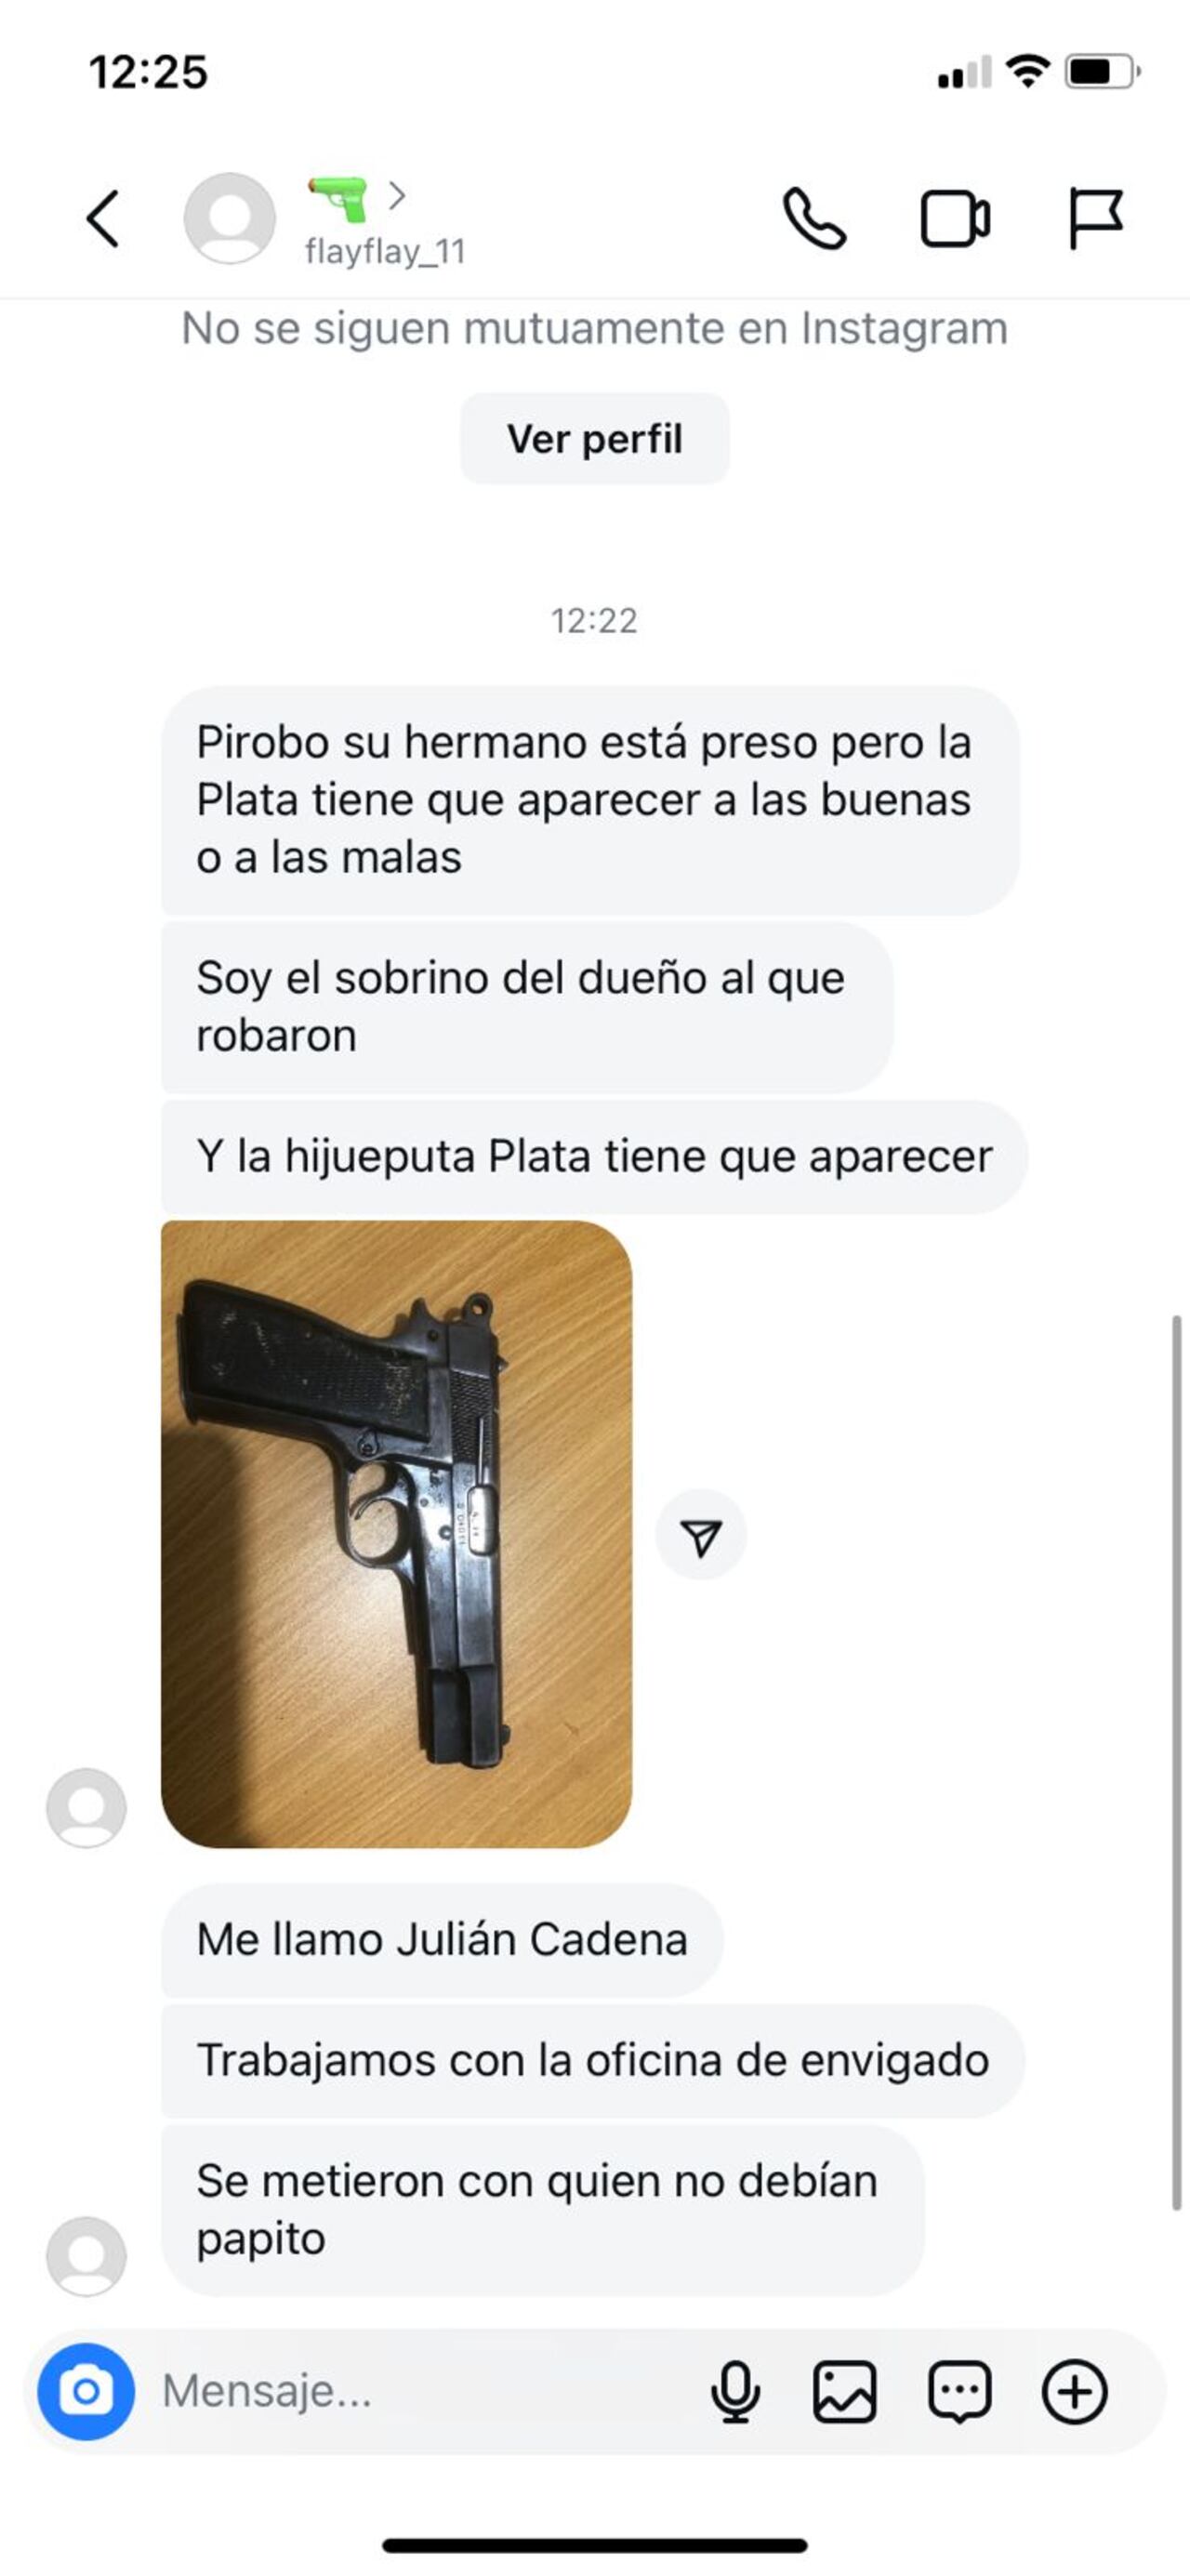 Amenazas por Facebook contra la familia Valenciano Yepes.